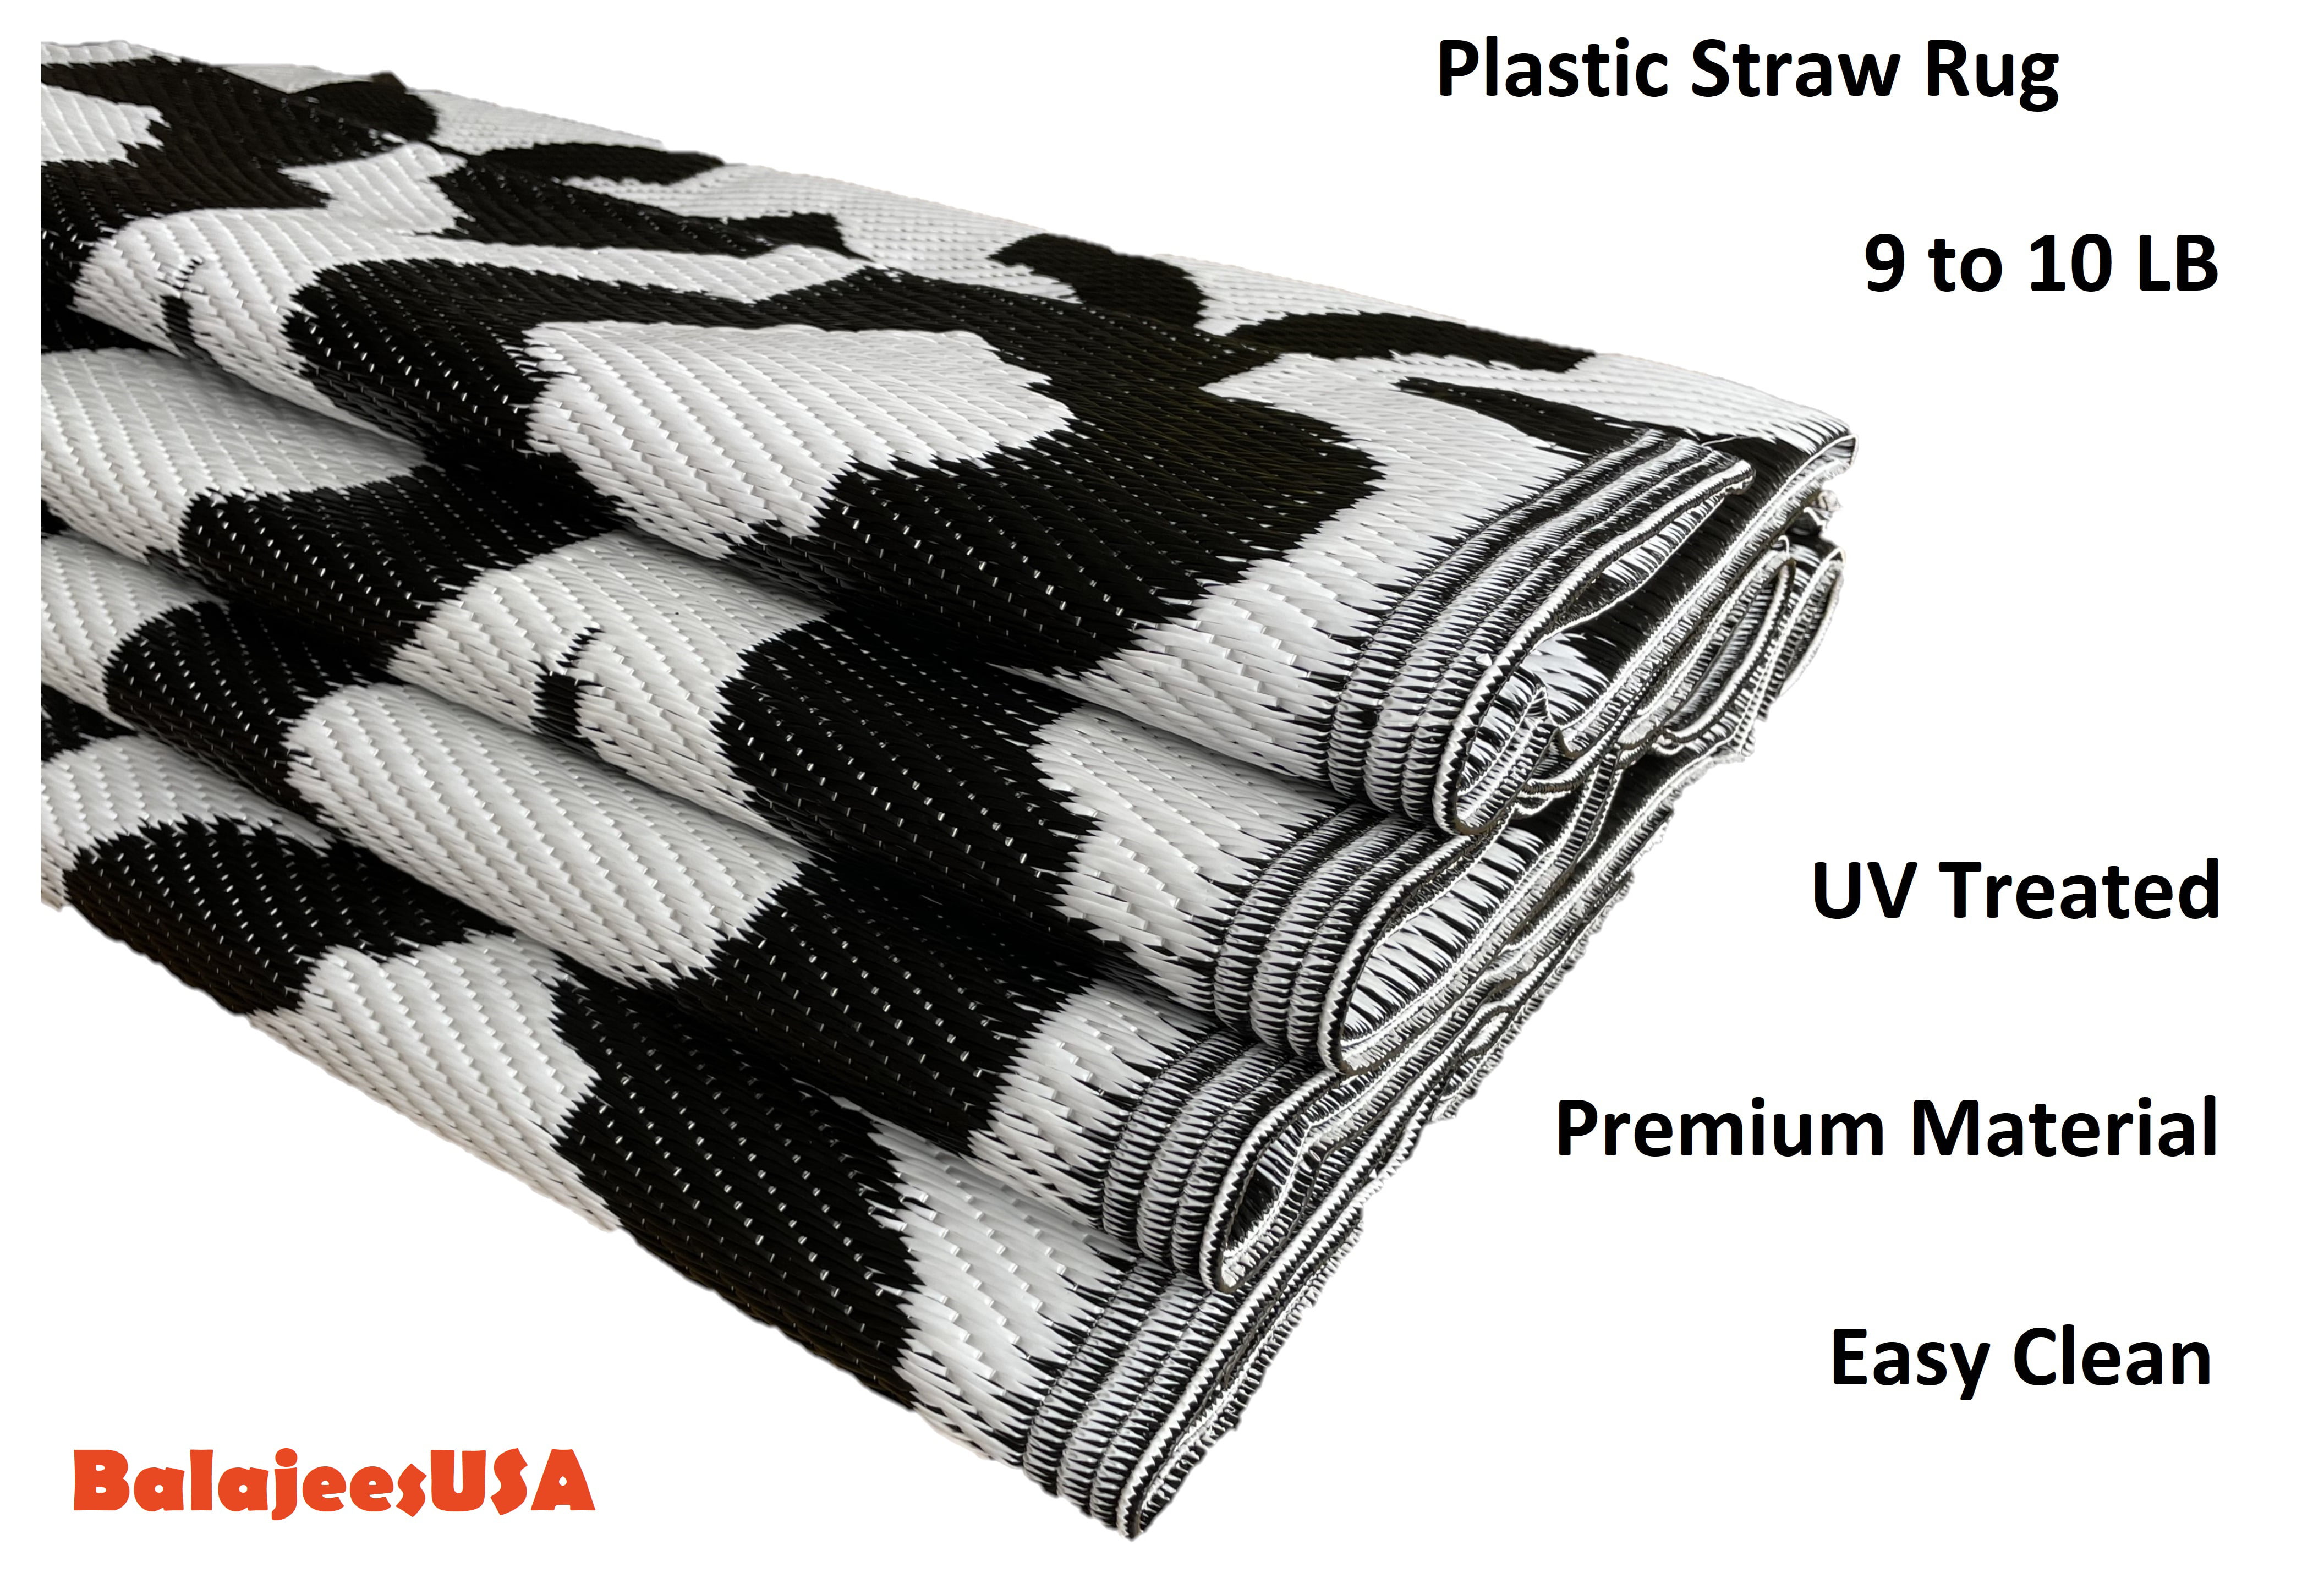 img.kwcdn.com/product/plastic-straw-rug/d69d2f15w9